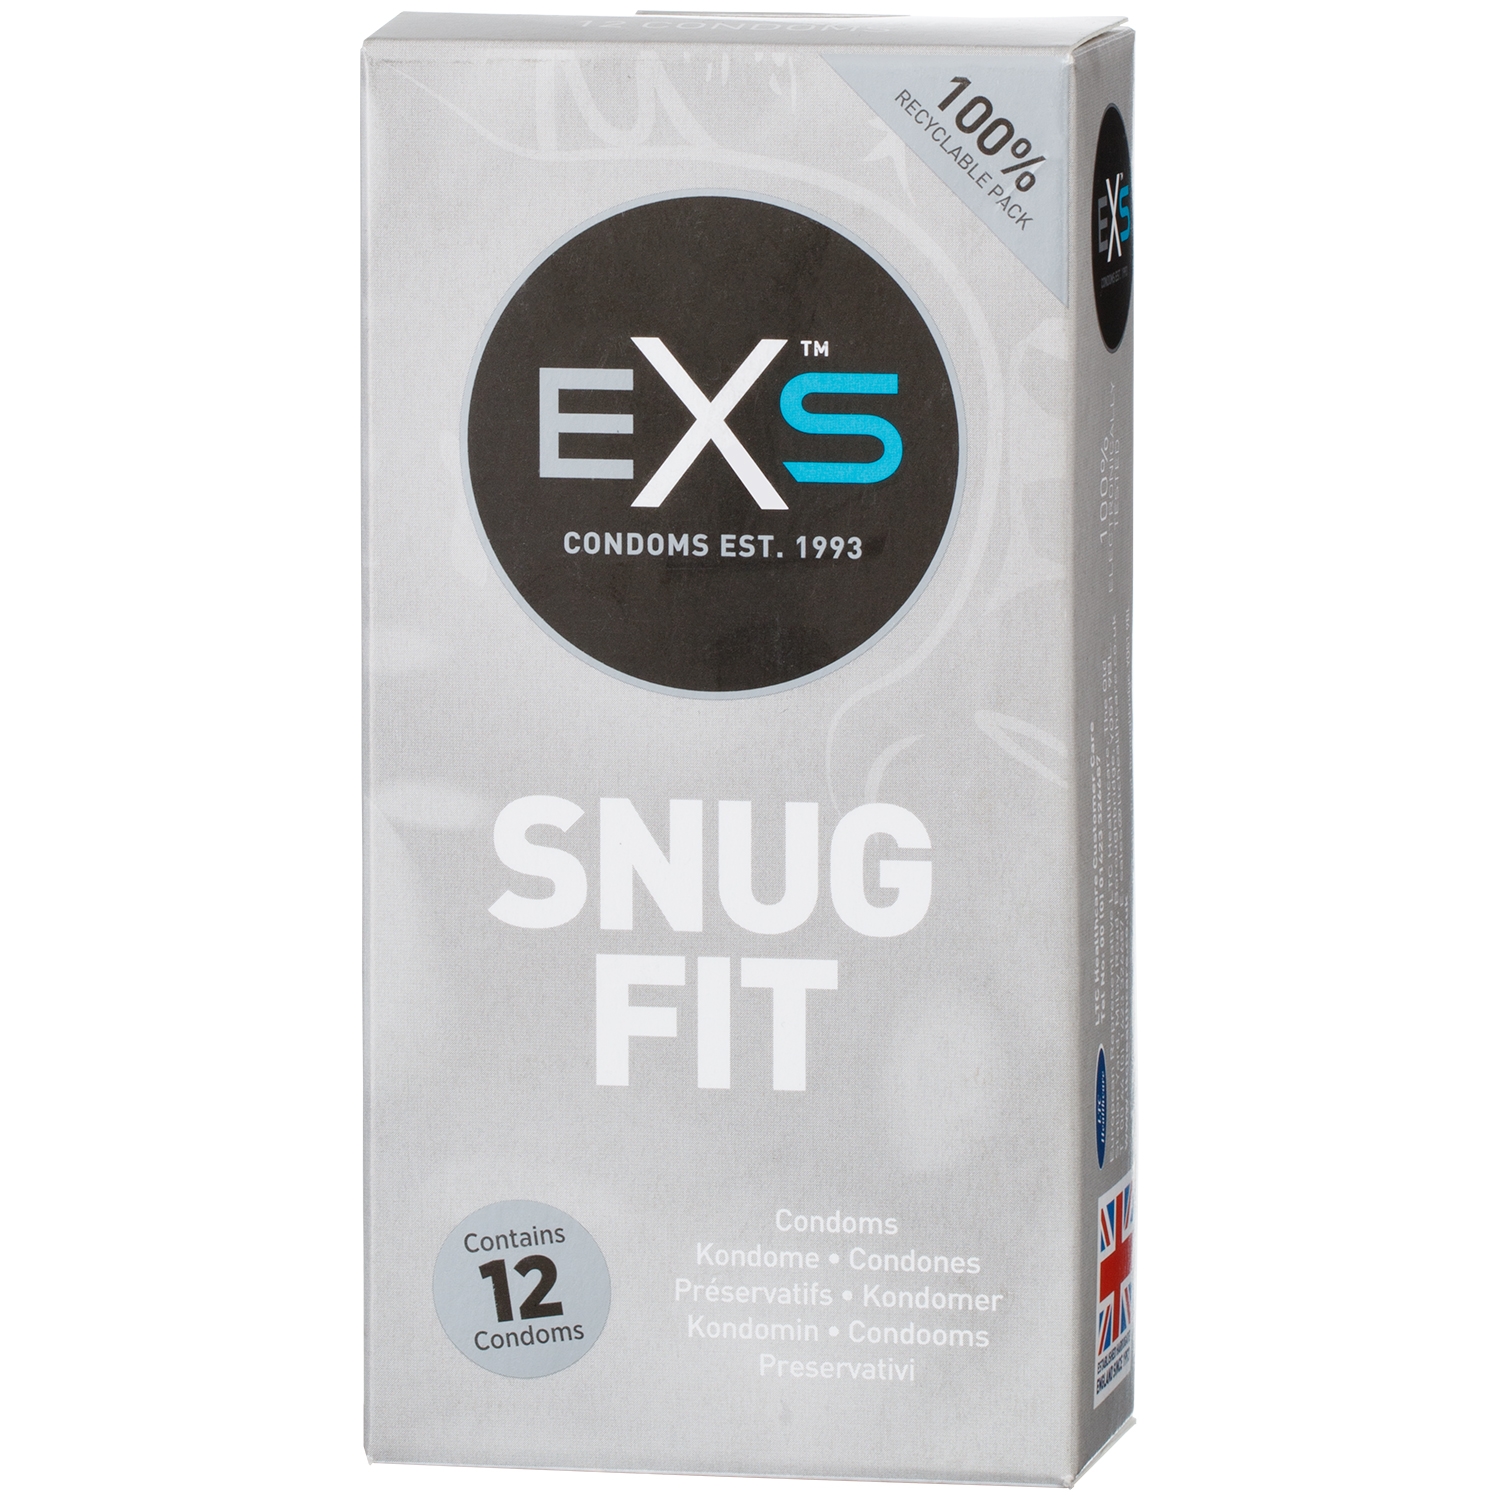 22763-exs-snug-fit-kondomer-12-stk_01_q100